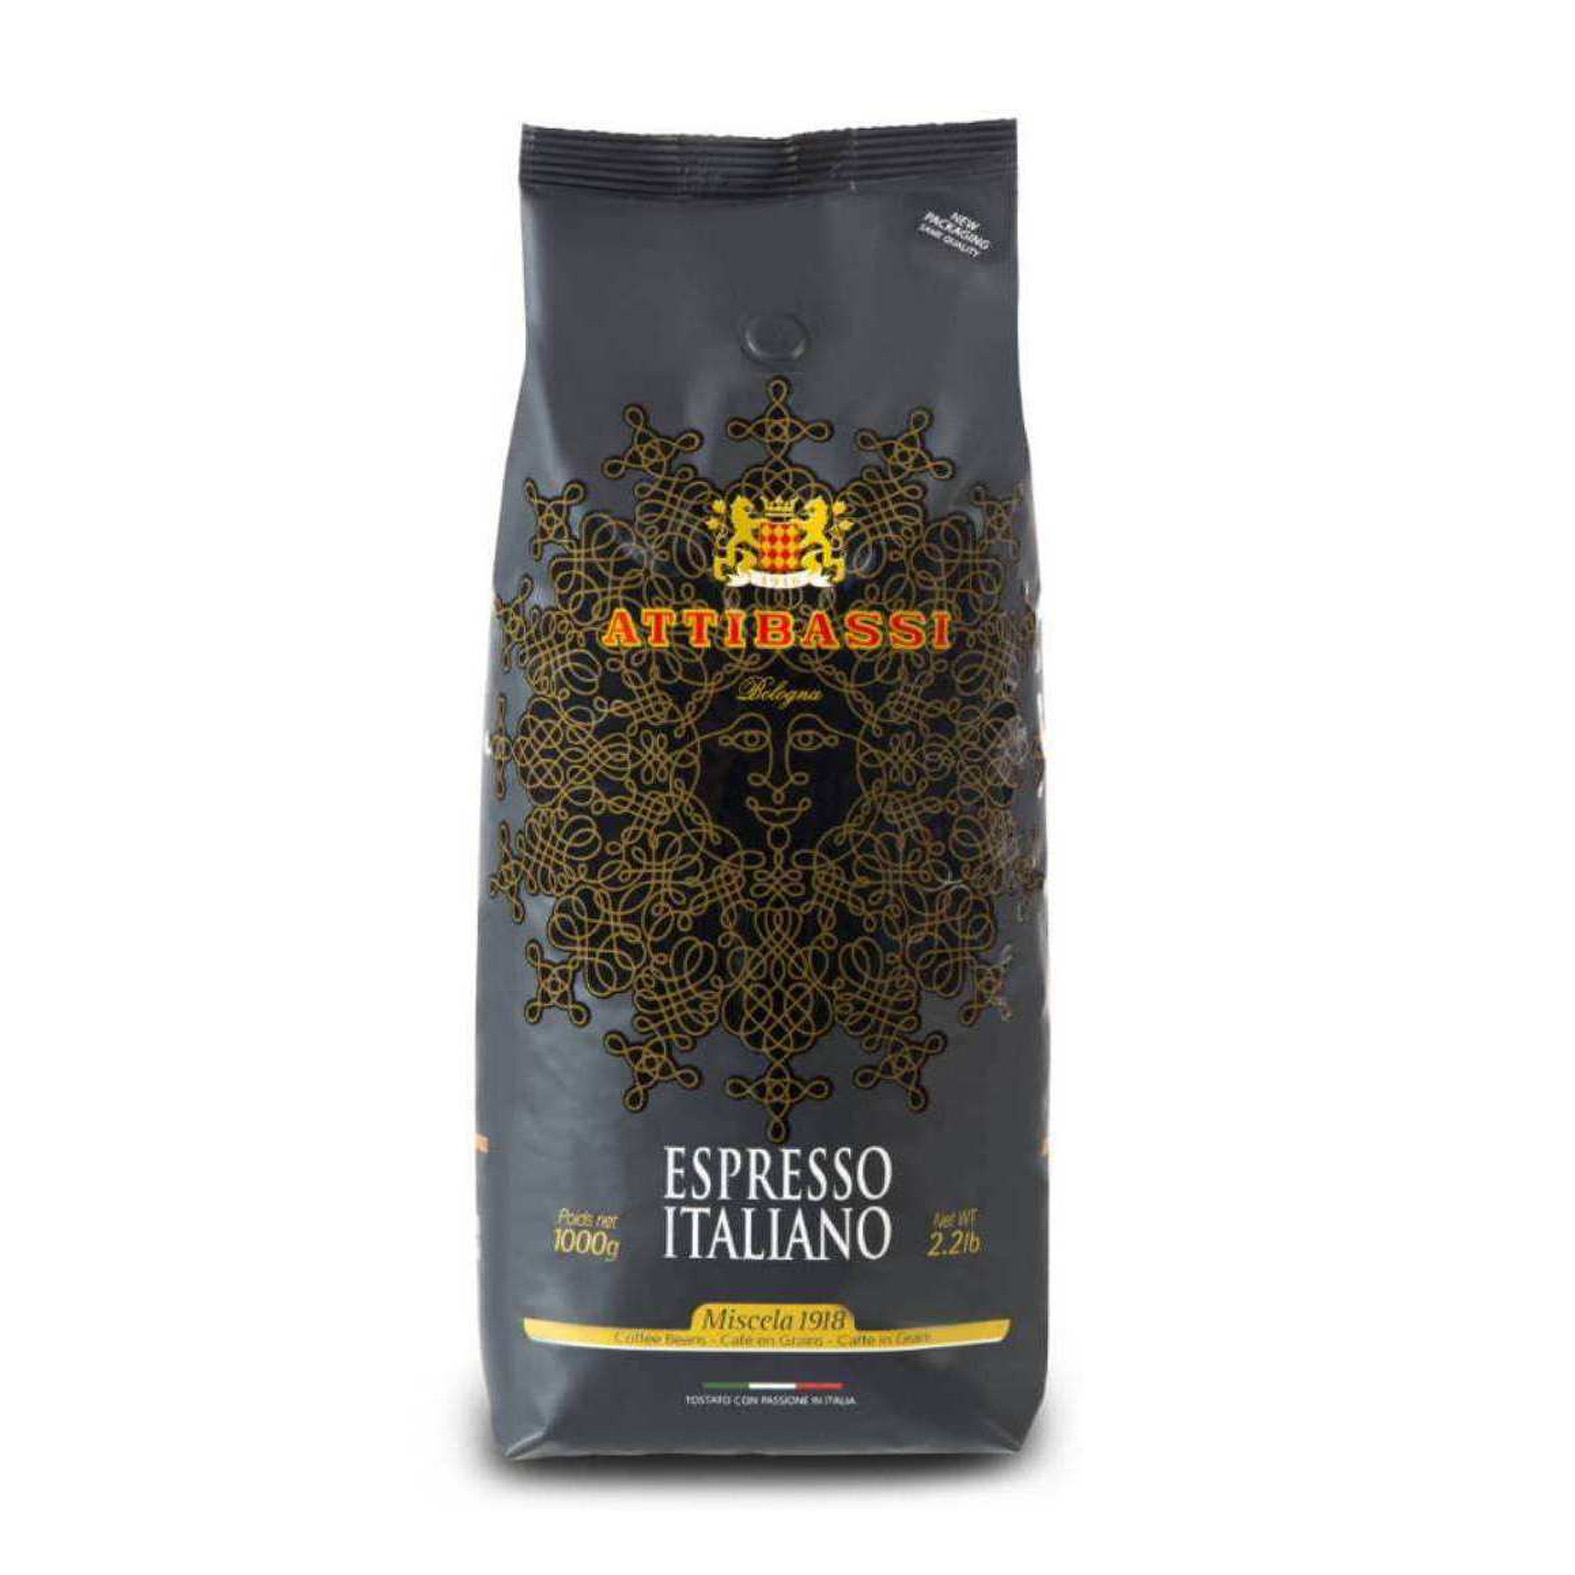  دانه قهوه میشلا آتیباسی - ۱ کیلوگرم 